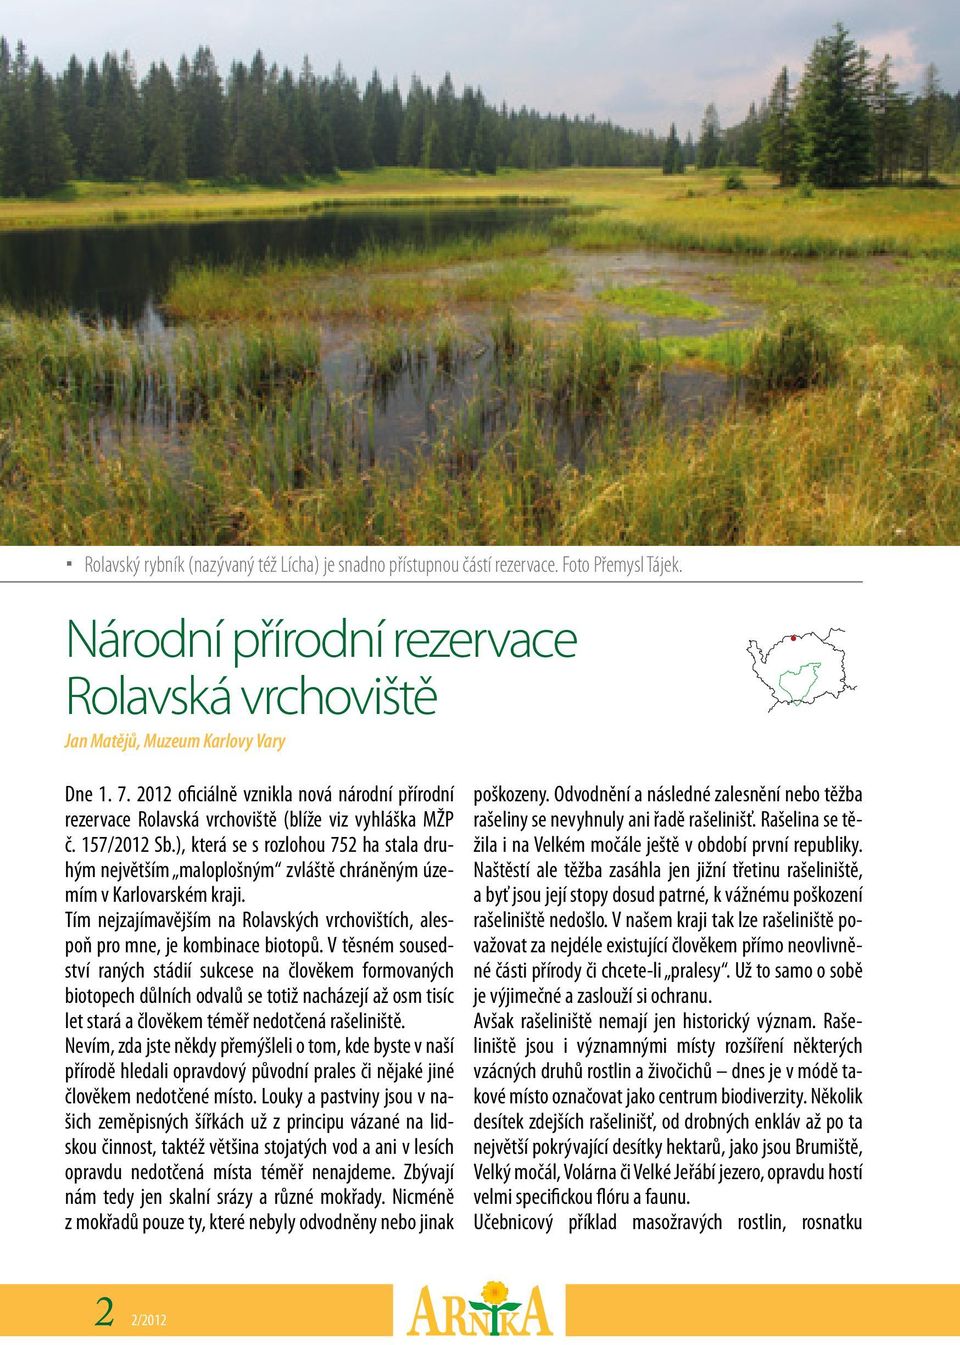 ), která se s rozlohou 752 ha stala druhým největším maloplošným zvláště chráněným územím v Karlovarském kraji. Tím nejzajímavějším na Rolavských vrchovištích, alespoň pro mne, je kombinace biotopů.